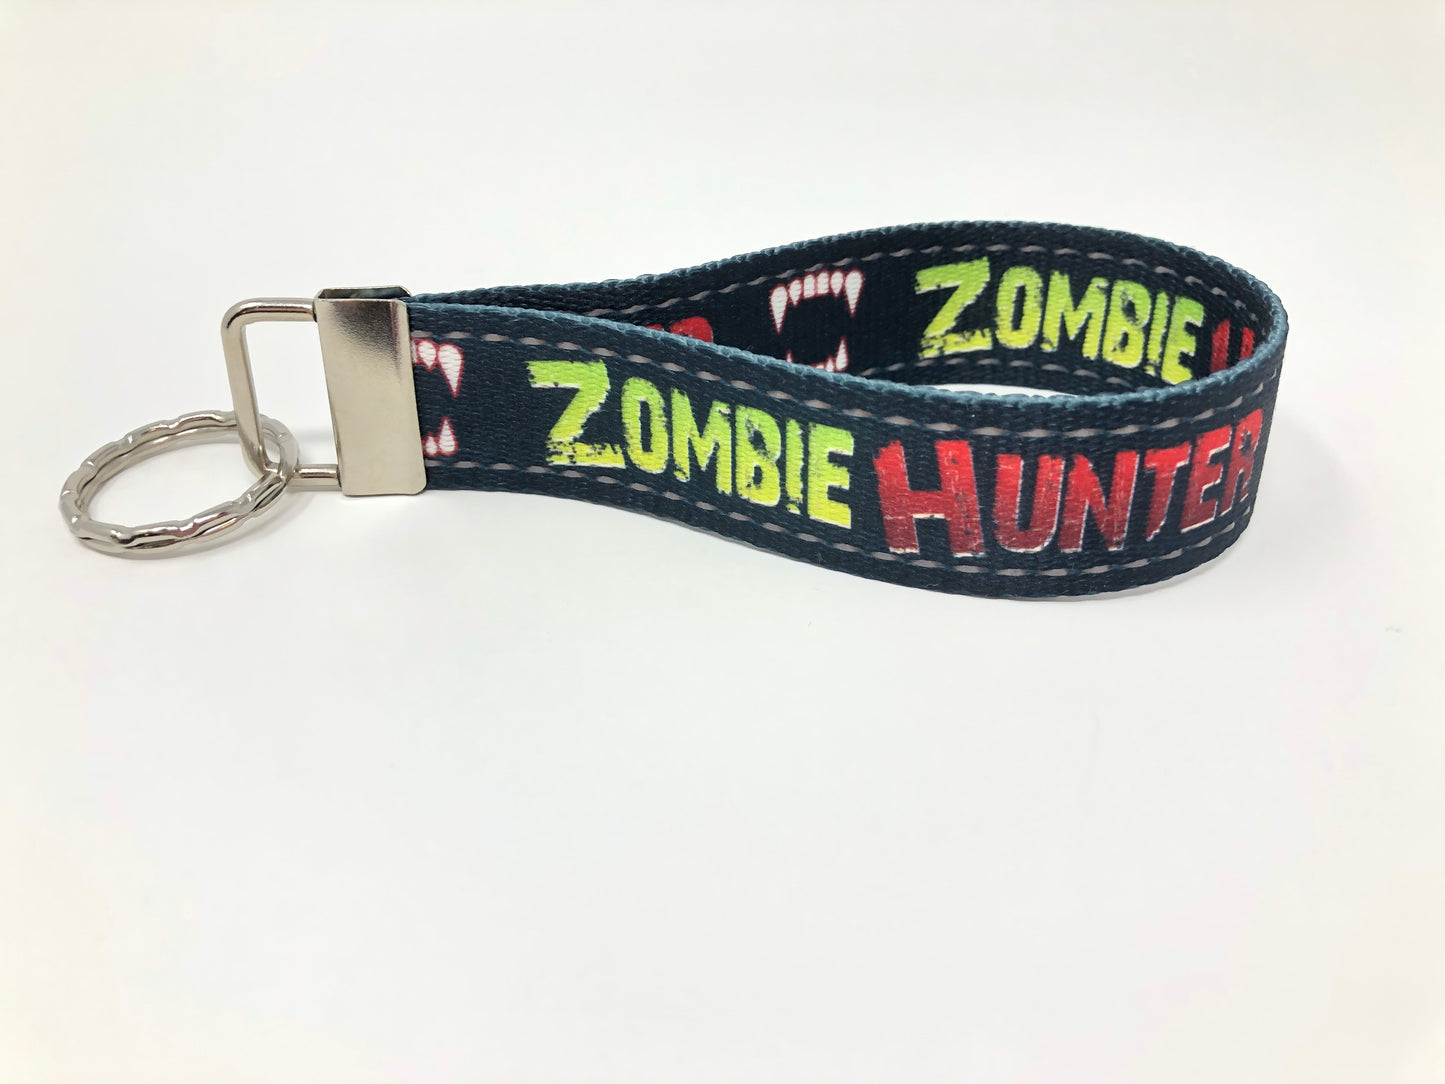 Zombie Hunter wristlet keychain